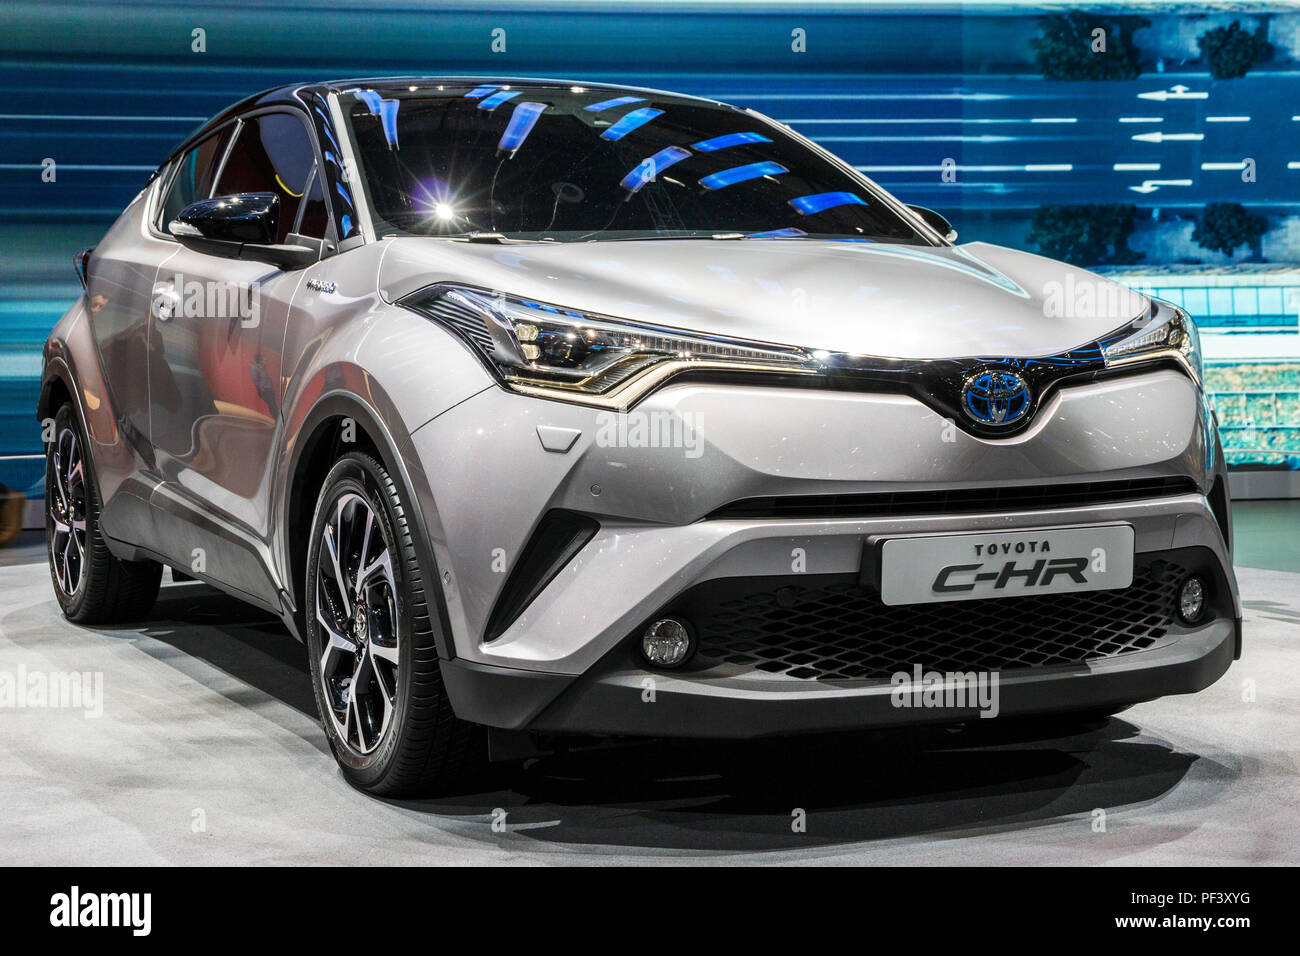 Genf, Schweiz - 1. MÄRZ 2016: Toyota C-HR-Crossover-SUV Auto auf dem 86. Internationalen Automobilsalon in Genf präsentiert. Stockfoto